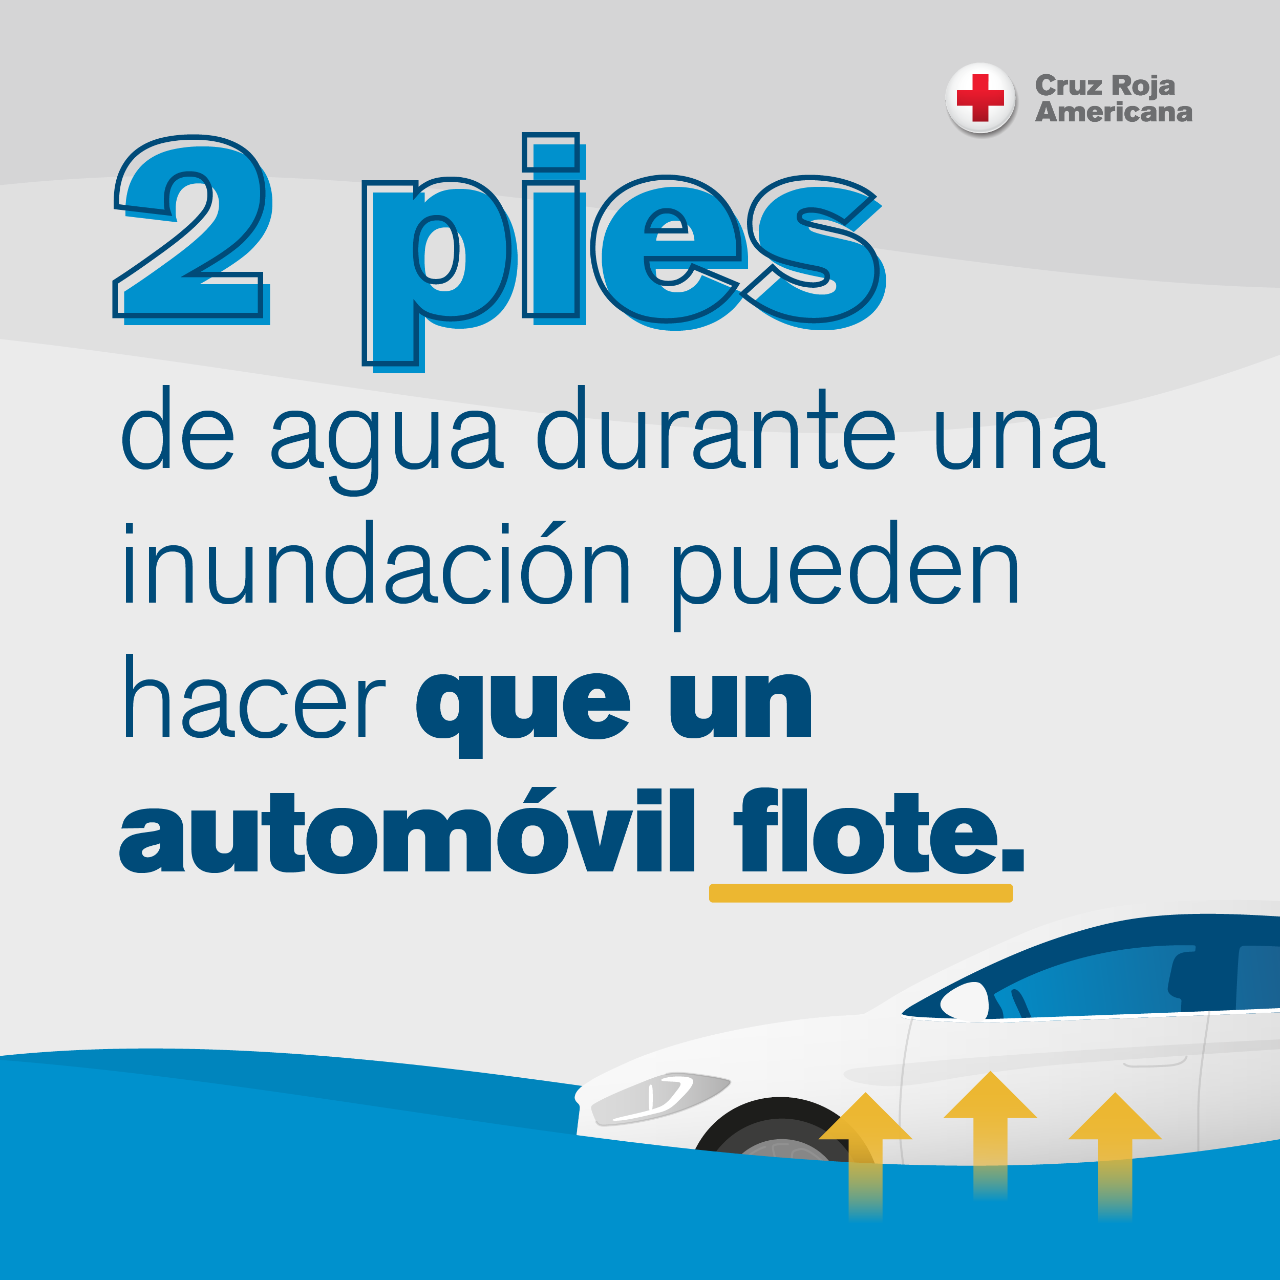 2 pies de agua durante una inundacion pueden hacer que un automovil flote